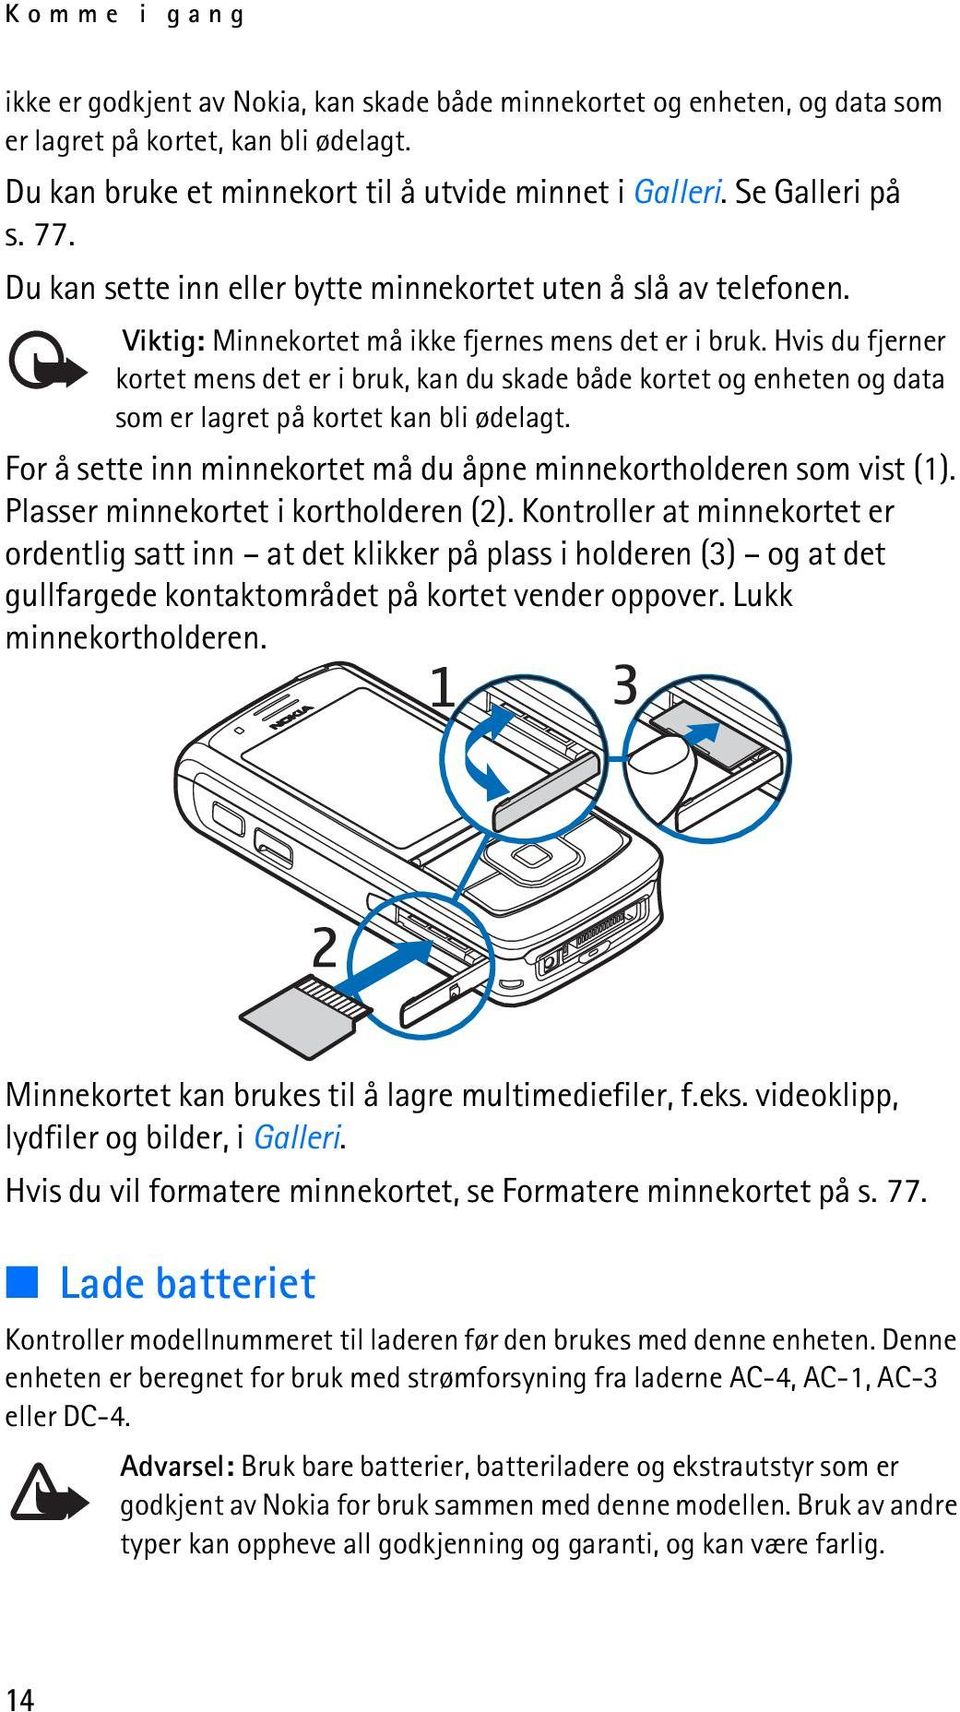 Brukerhåndbok for Nokia PDF Free Download